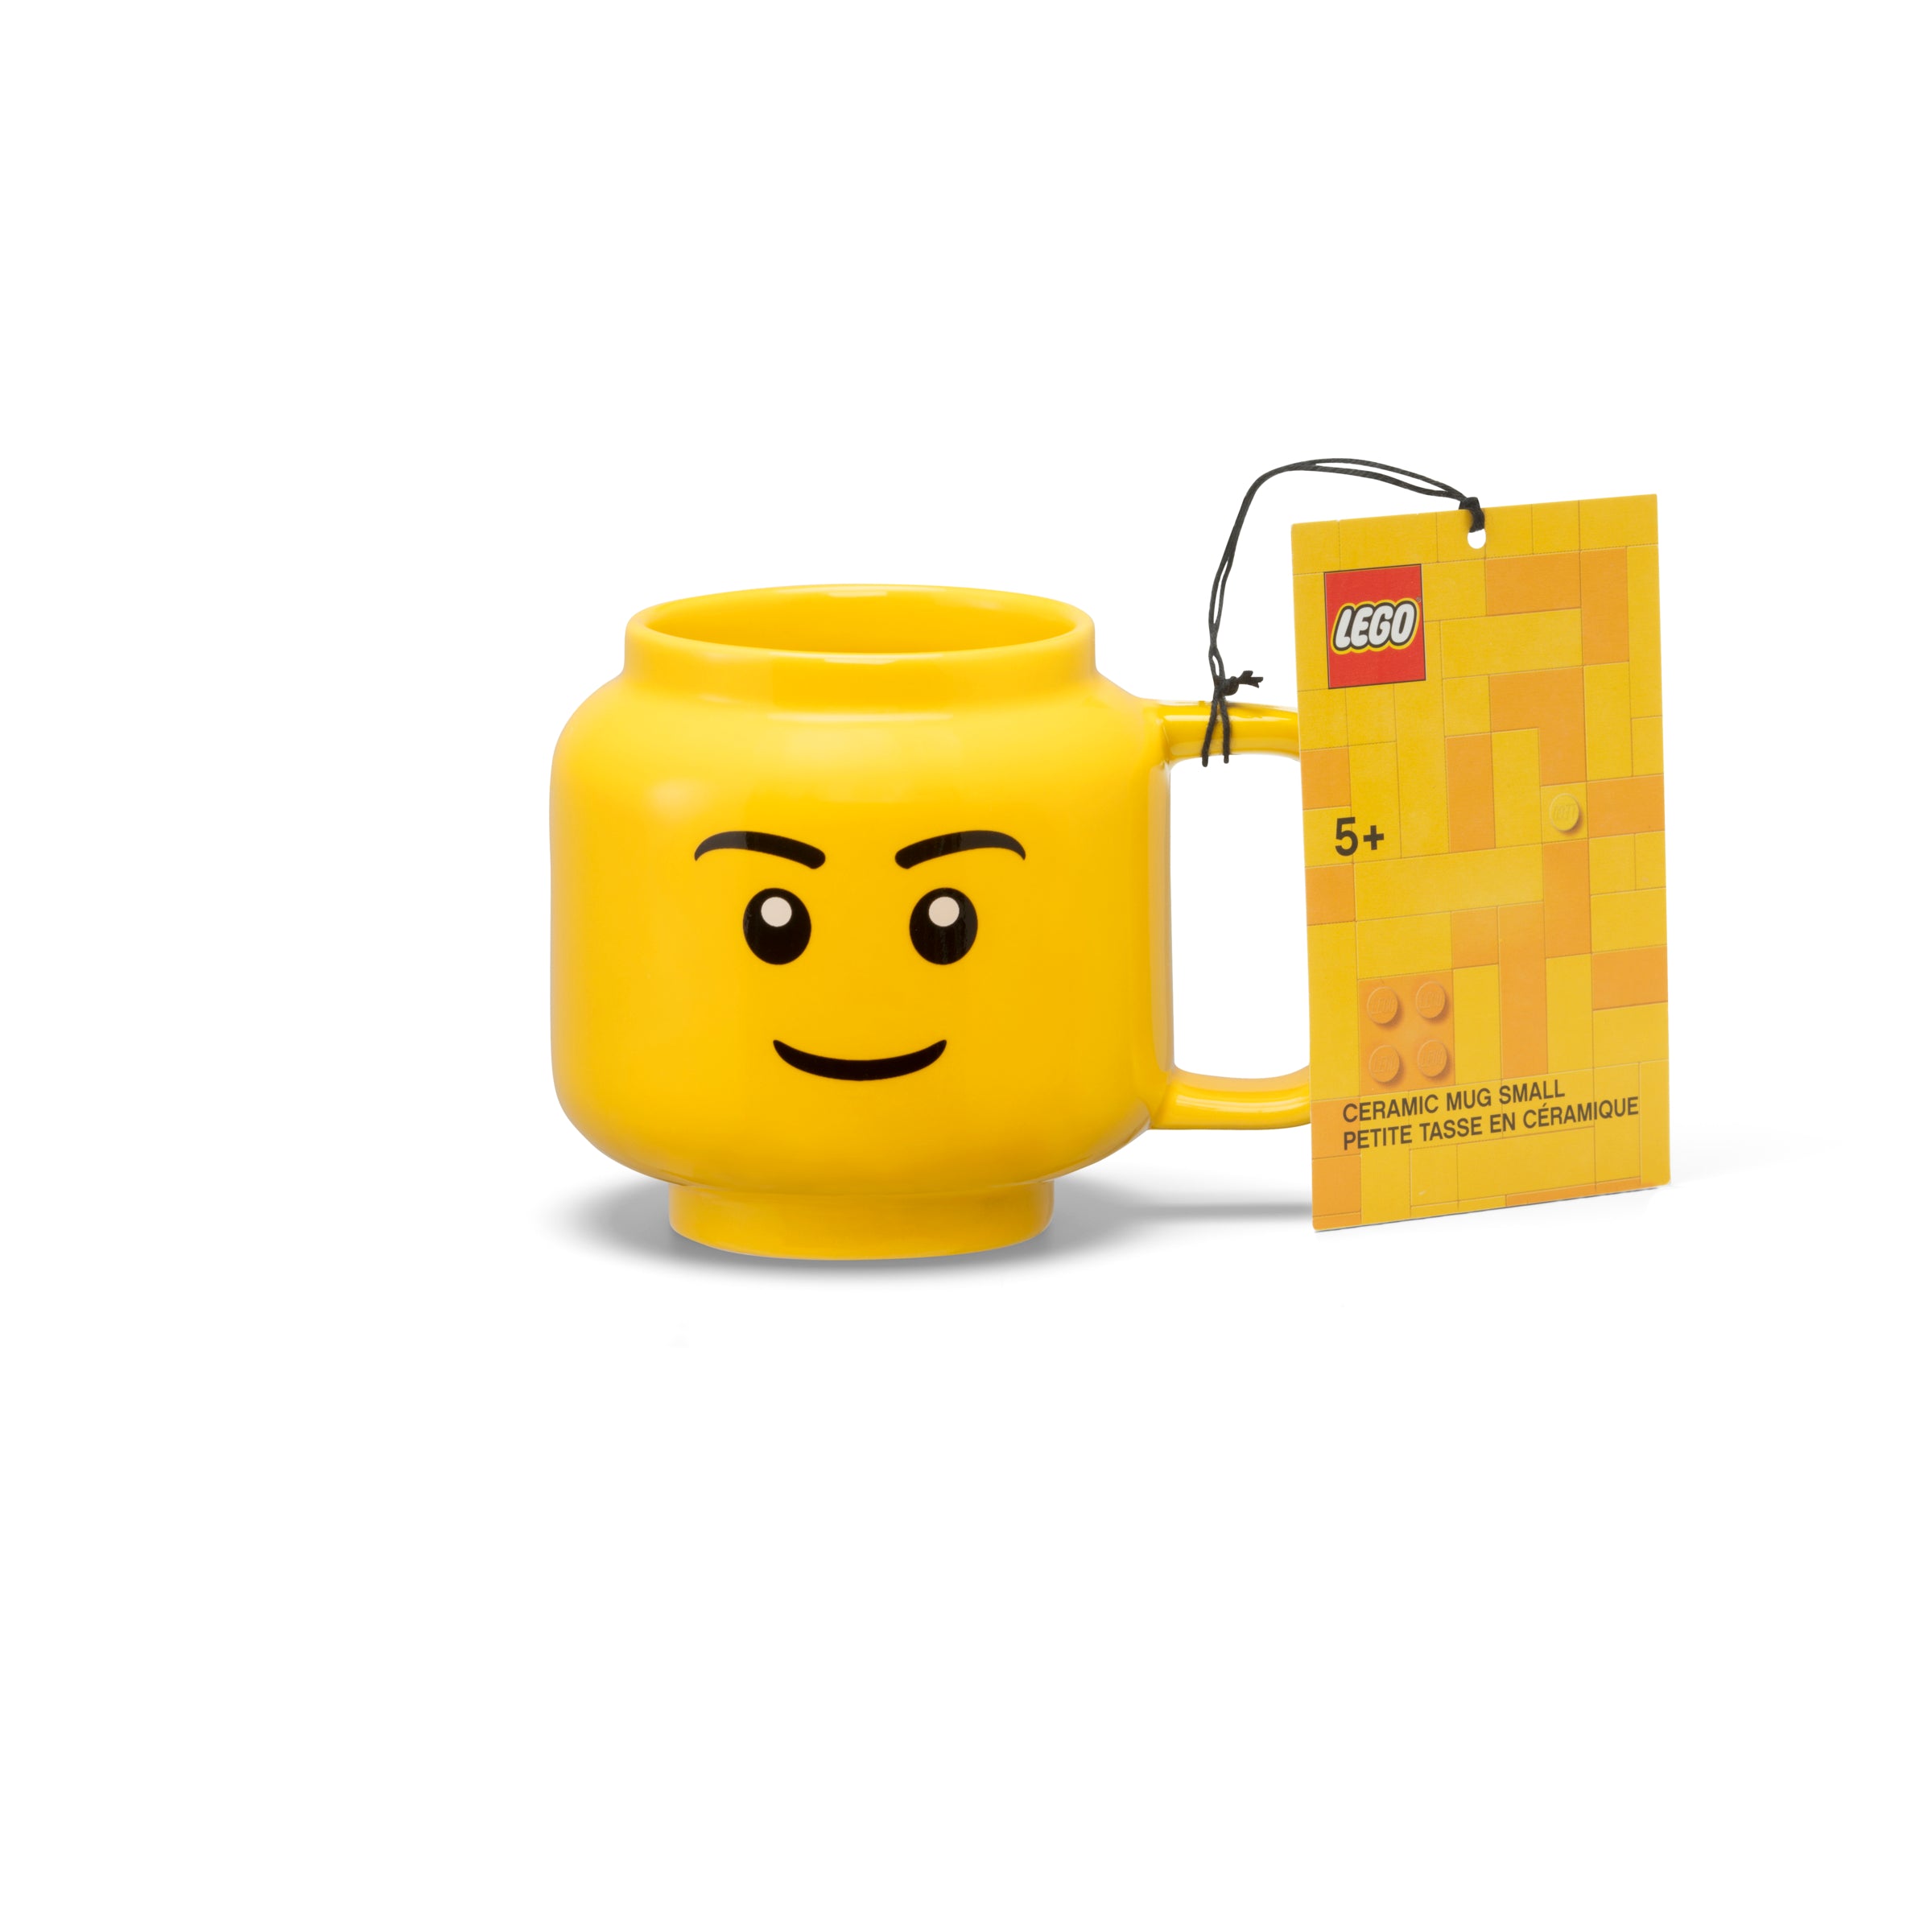 LEGO Small Ceramic Mug